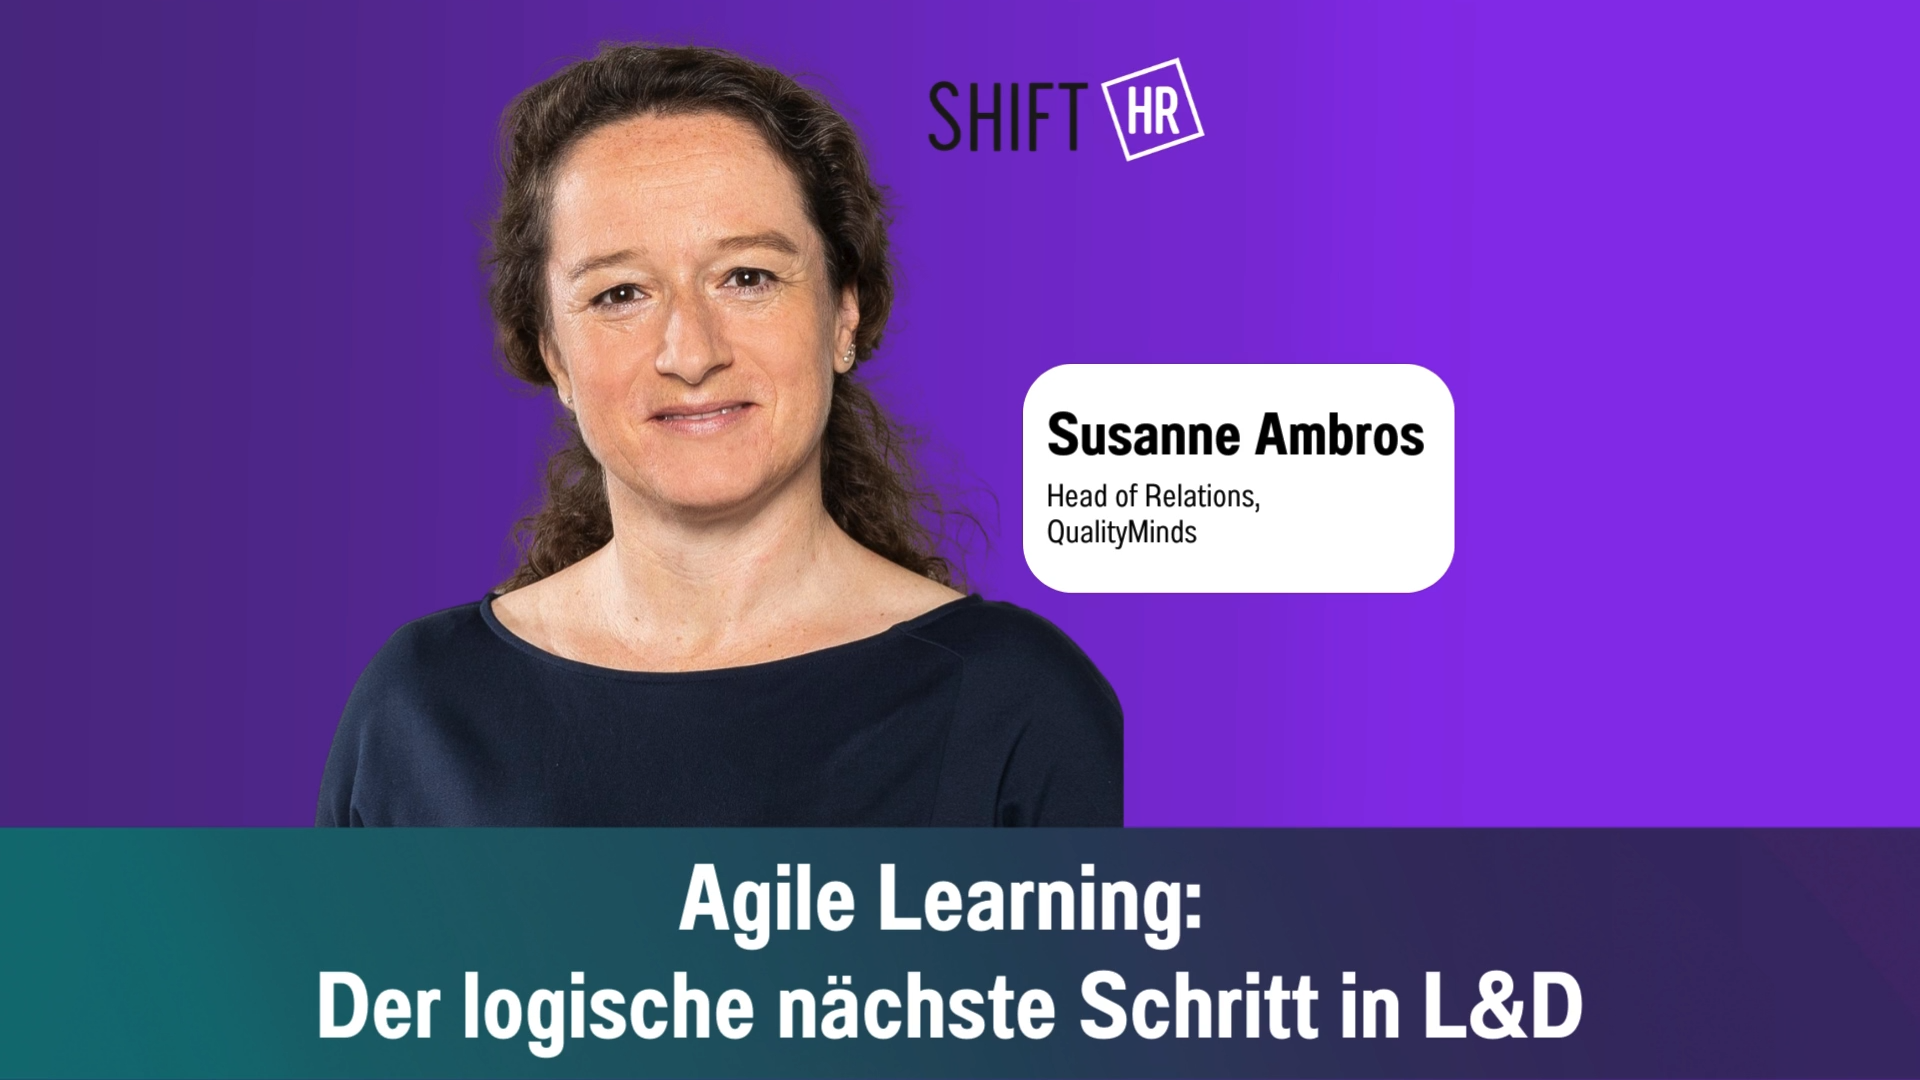 Agile Learning: Der logische nächste Schritt in L&D